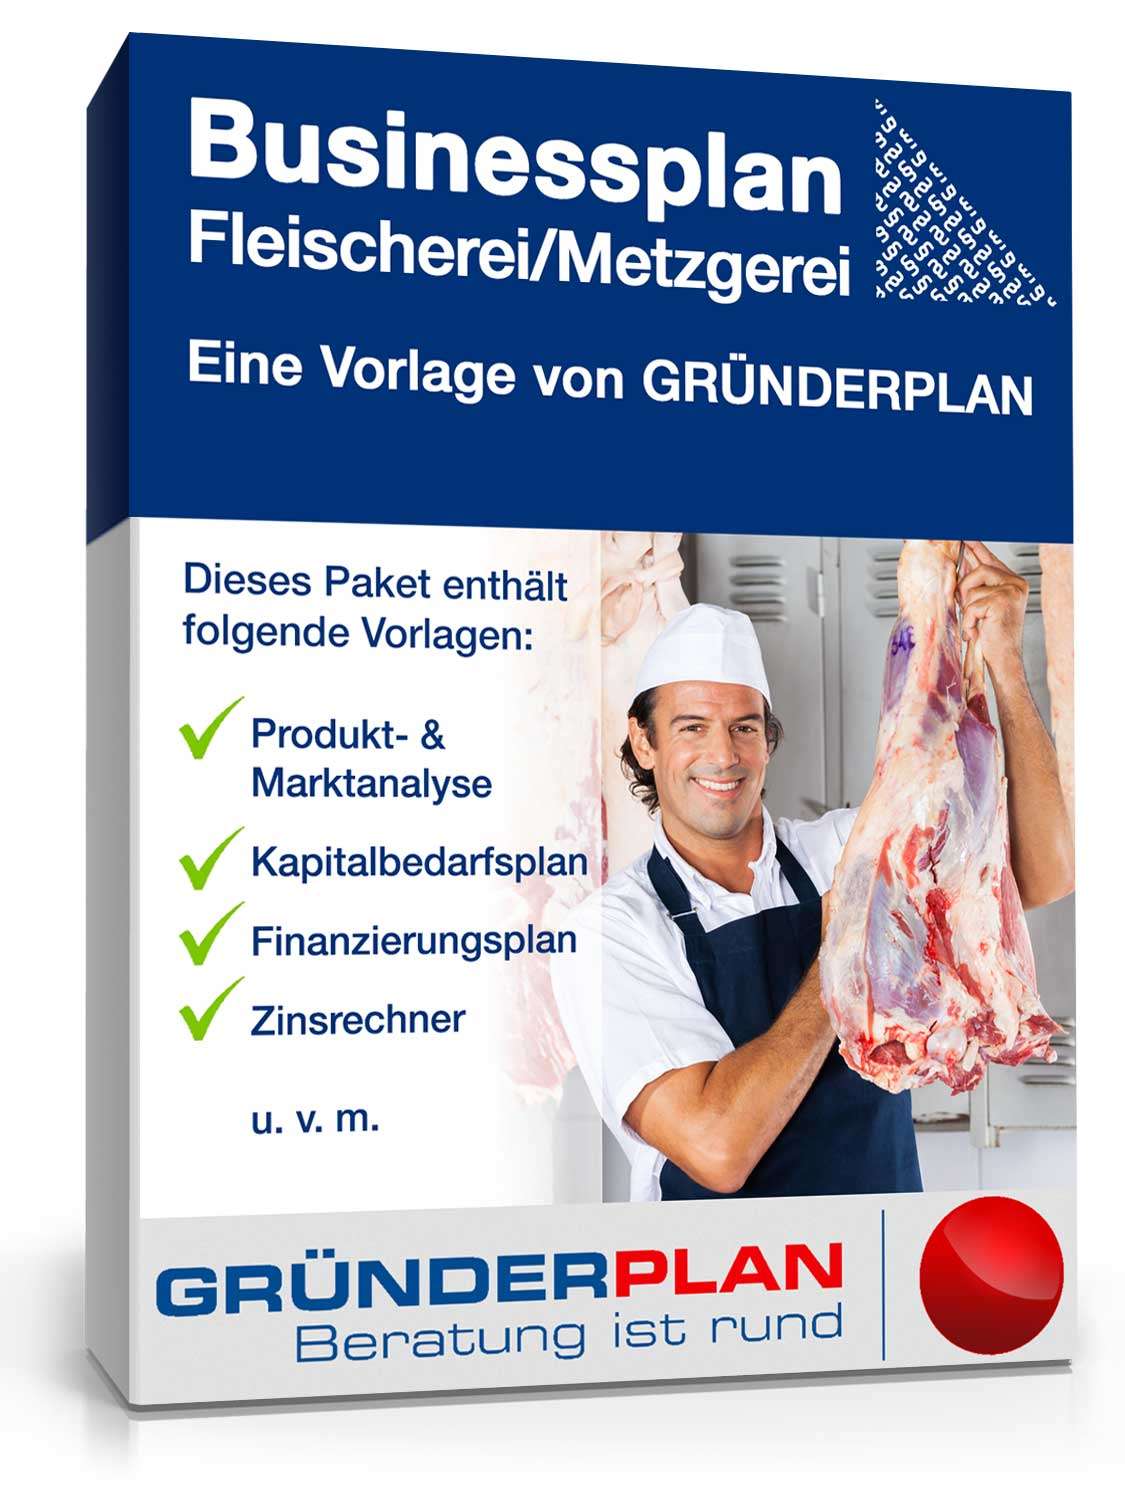 Hauptbild des Produkts: Businessplan Fleischerei/Metzgerei von Gründerplan